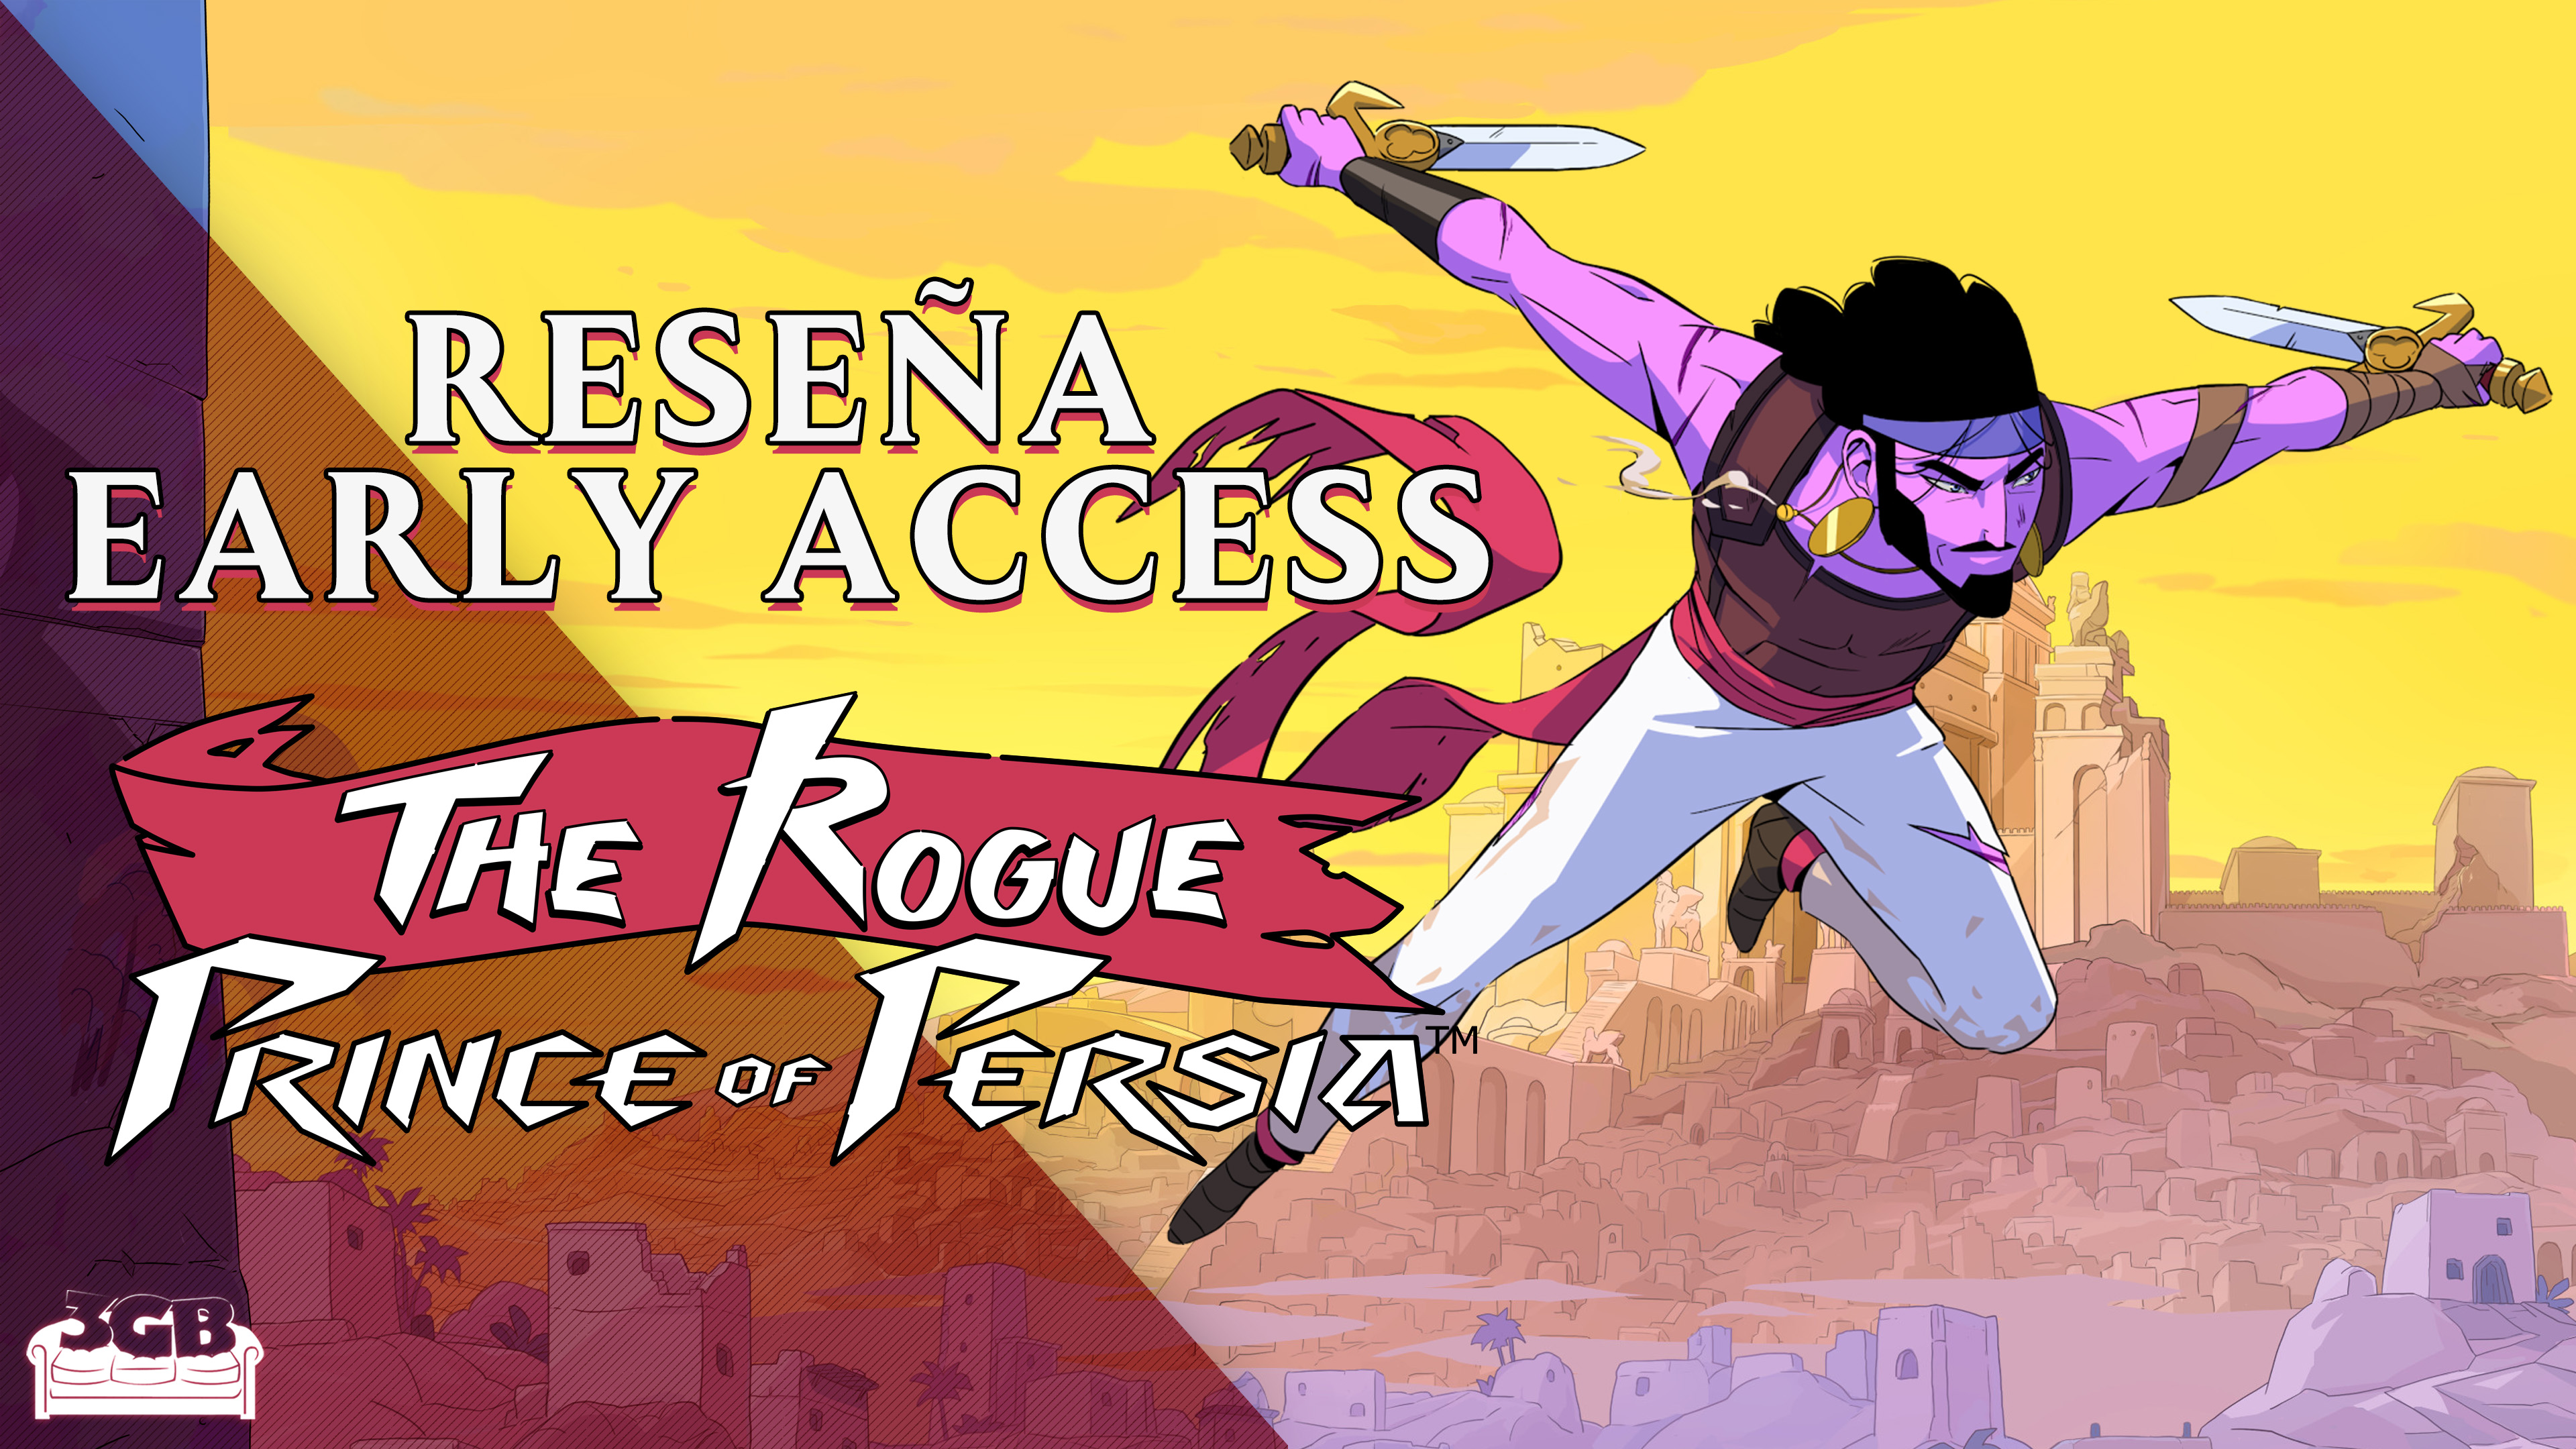 Previo The Rogue Prince of Persia – Un roguelite con una gran personalidad